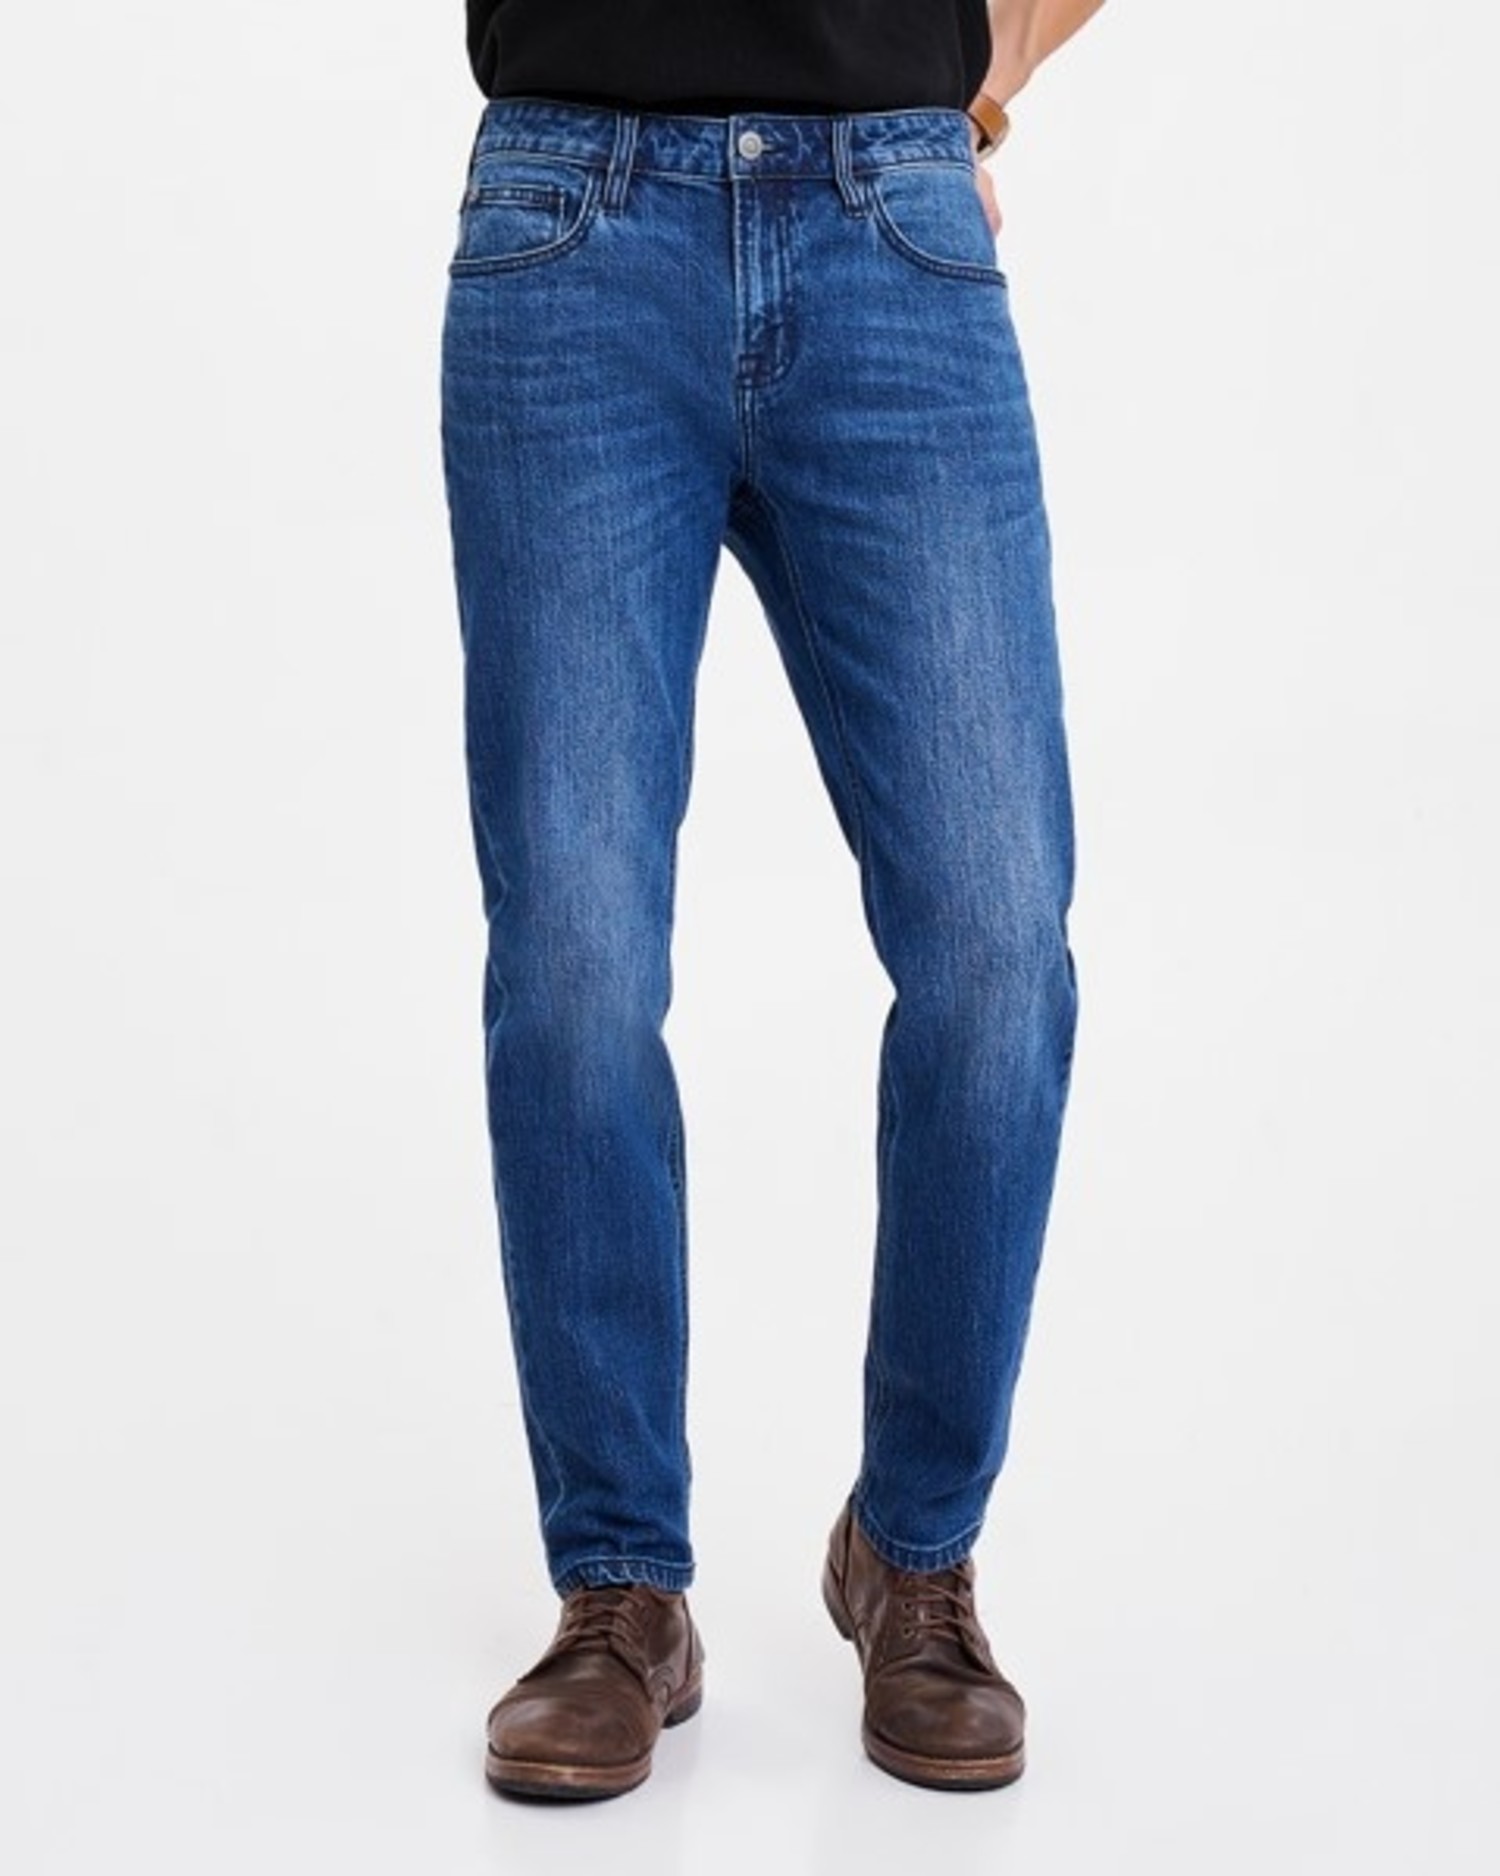 J Brand Jeans Mens Size 36 x 29 Kane Straight Leg Phantom Wash